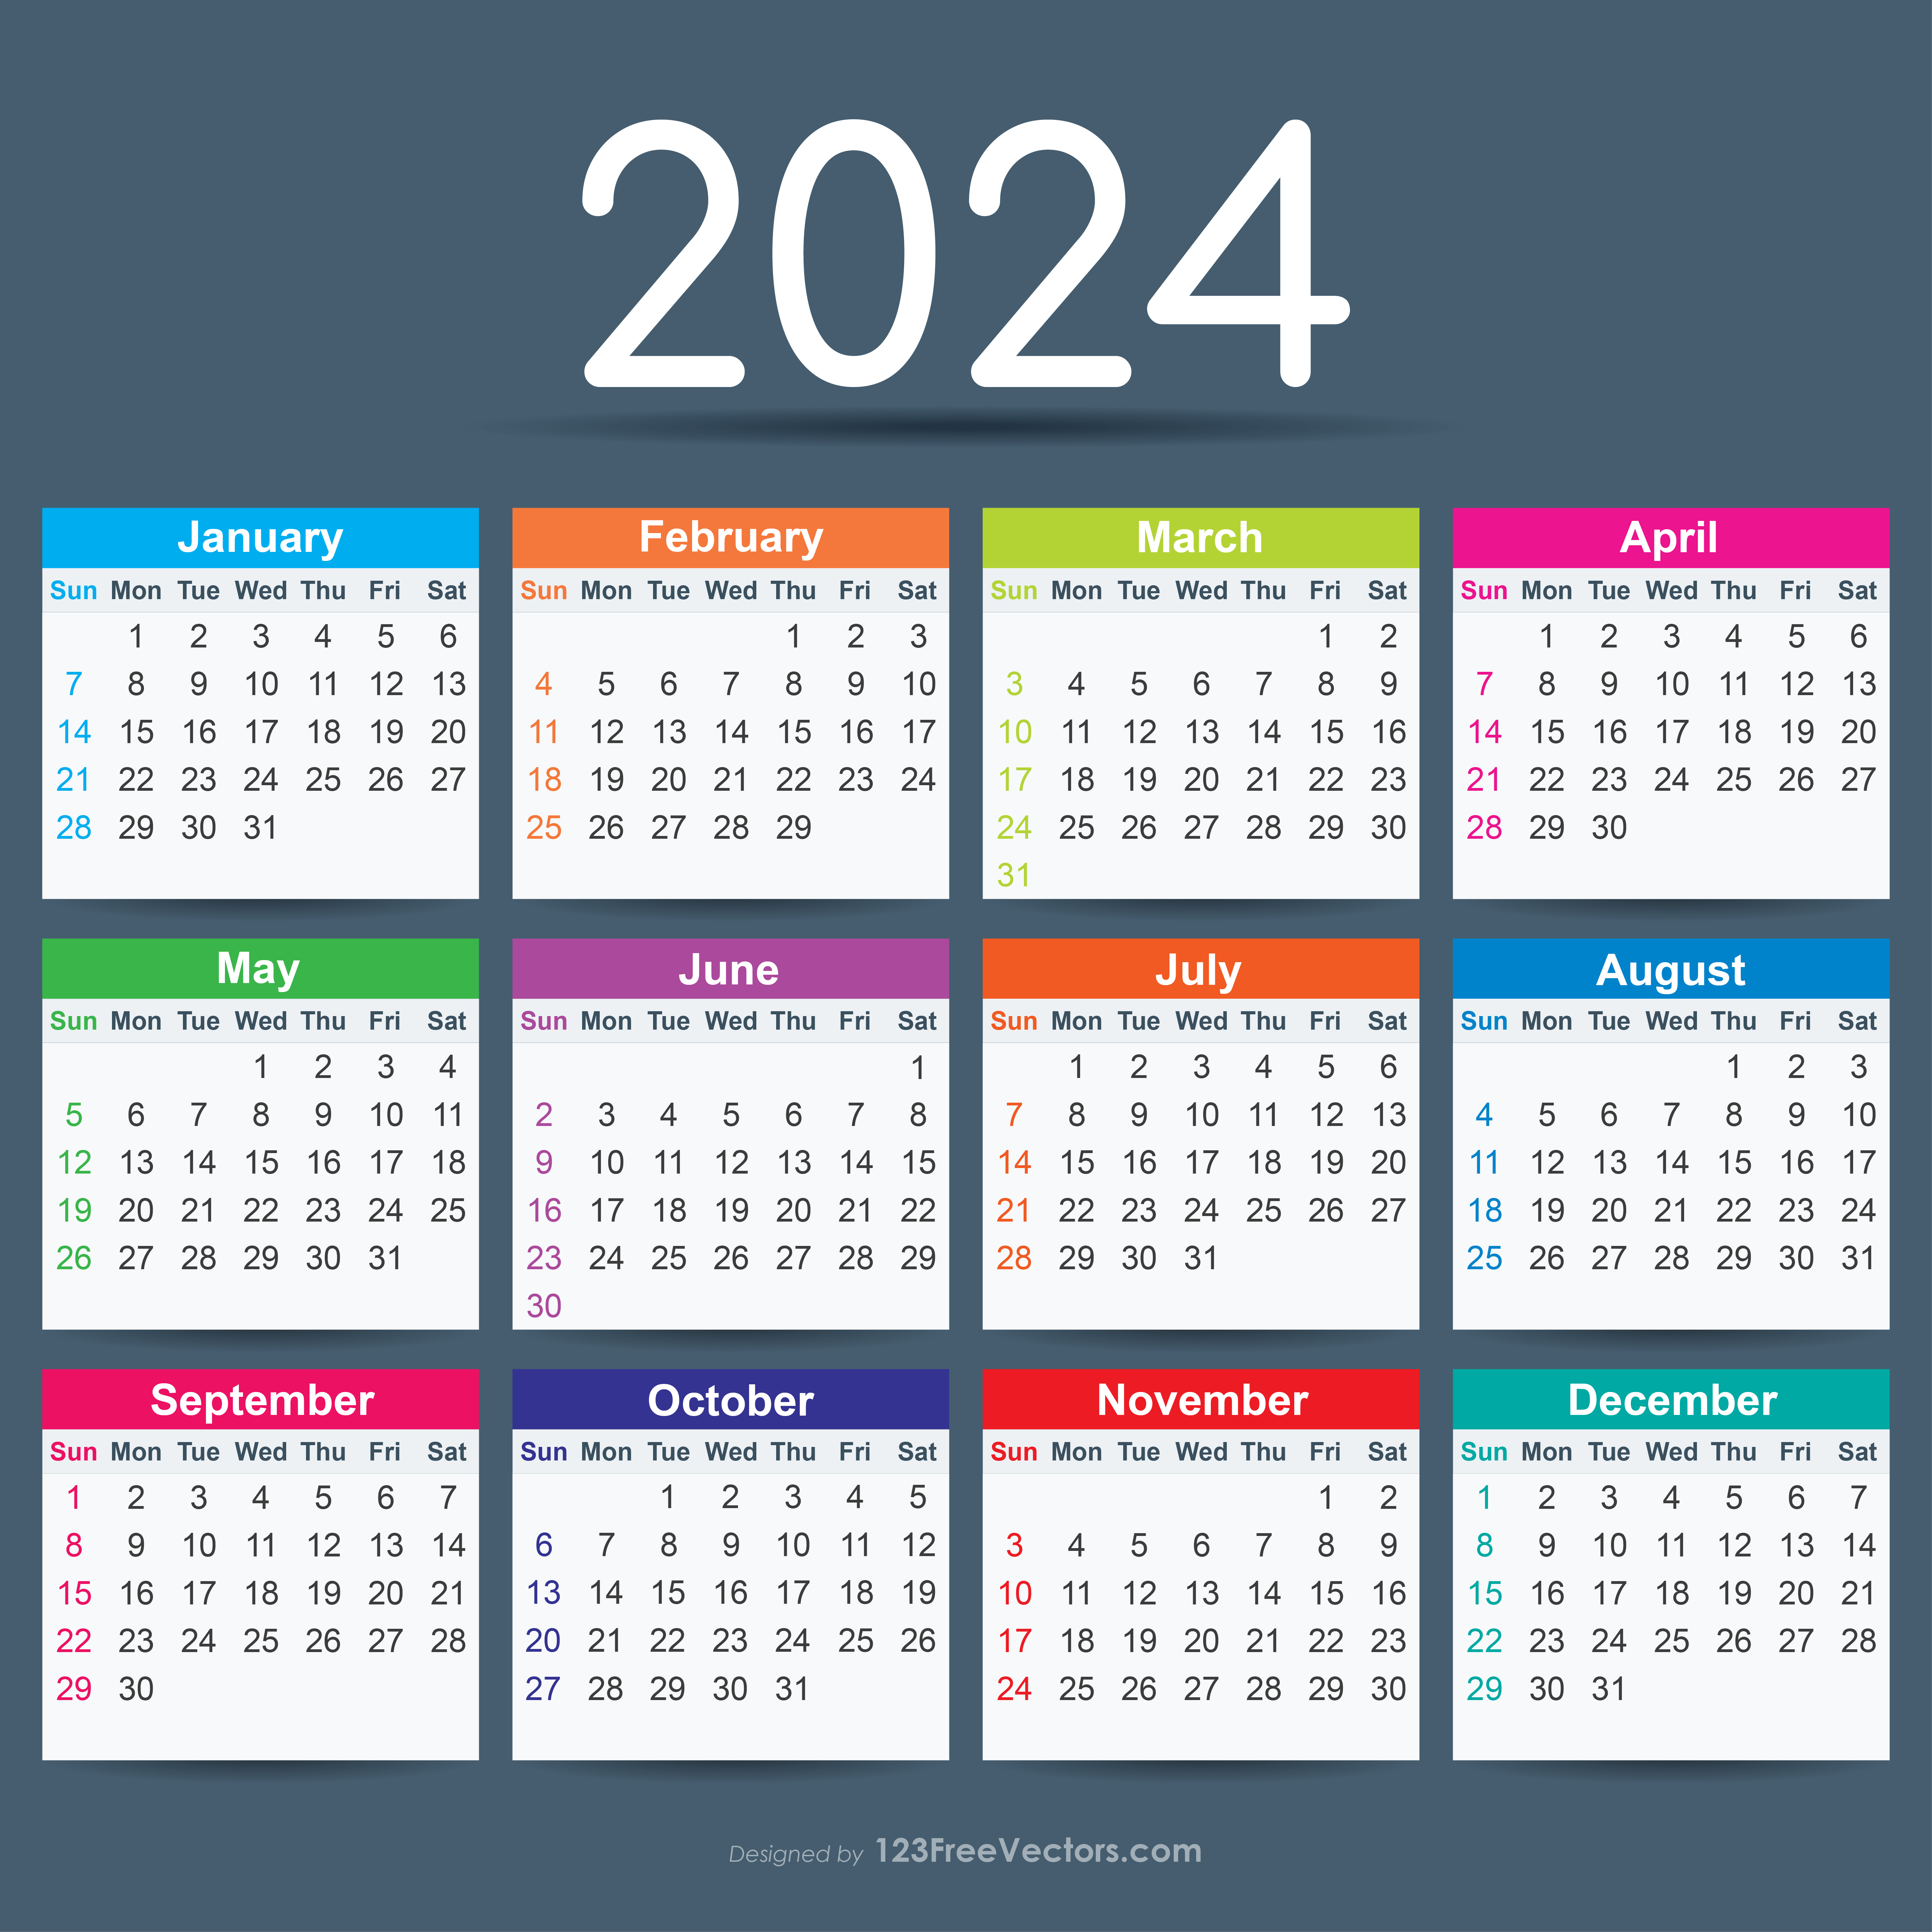 2024 calendar Royalty Free Vector Image - VectorStock